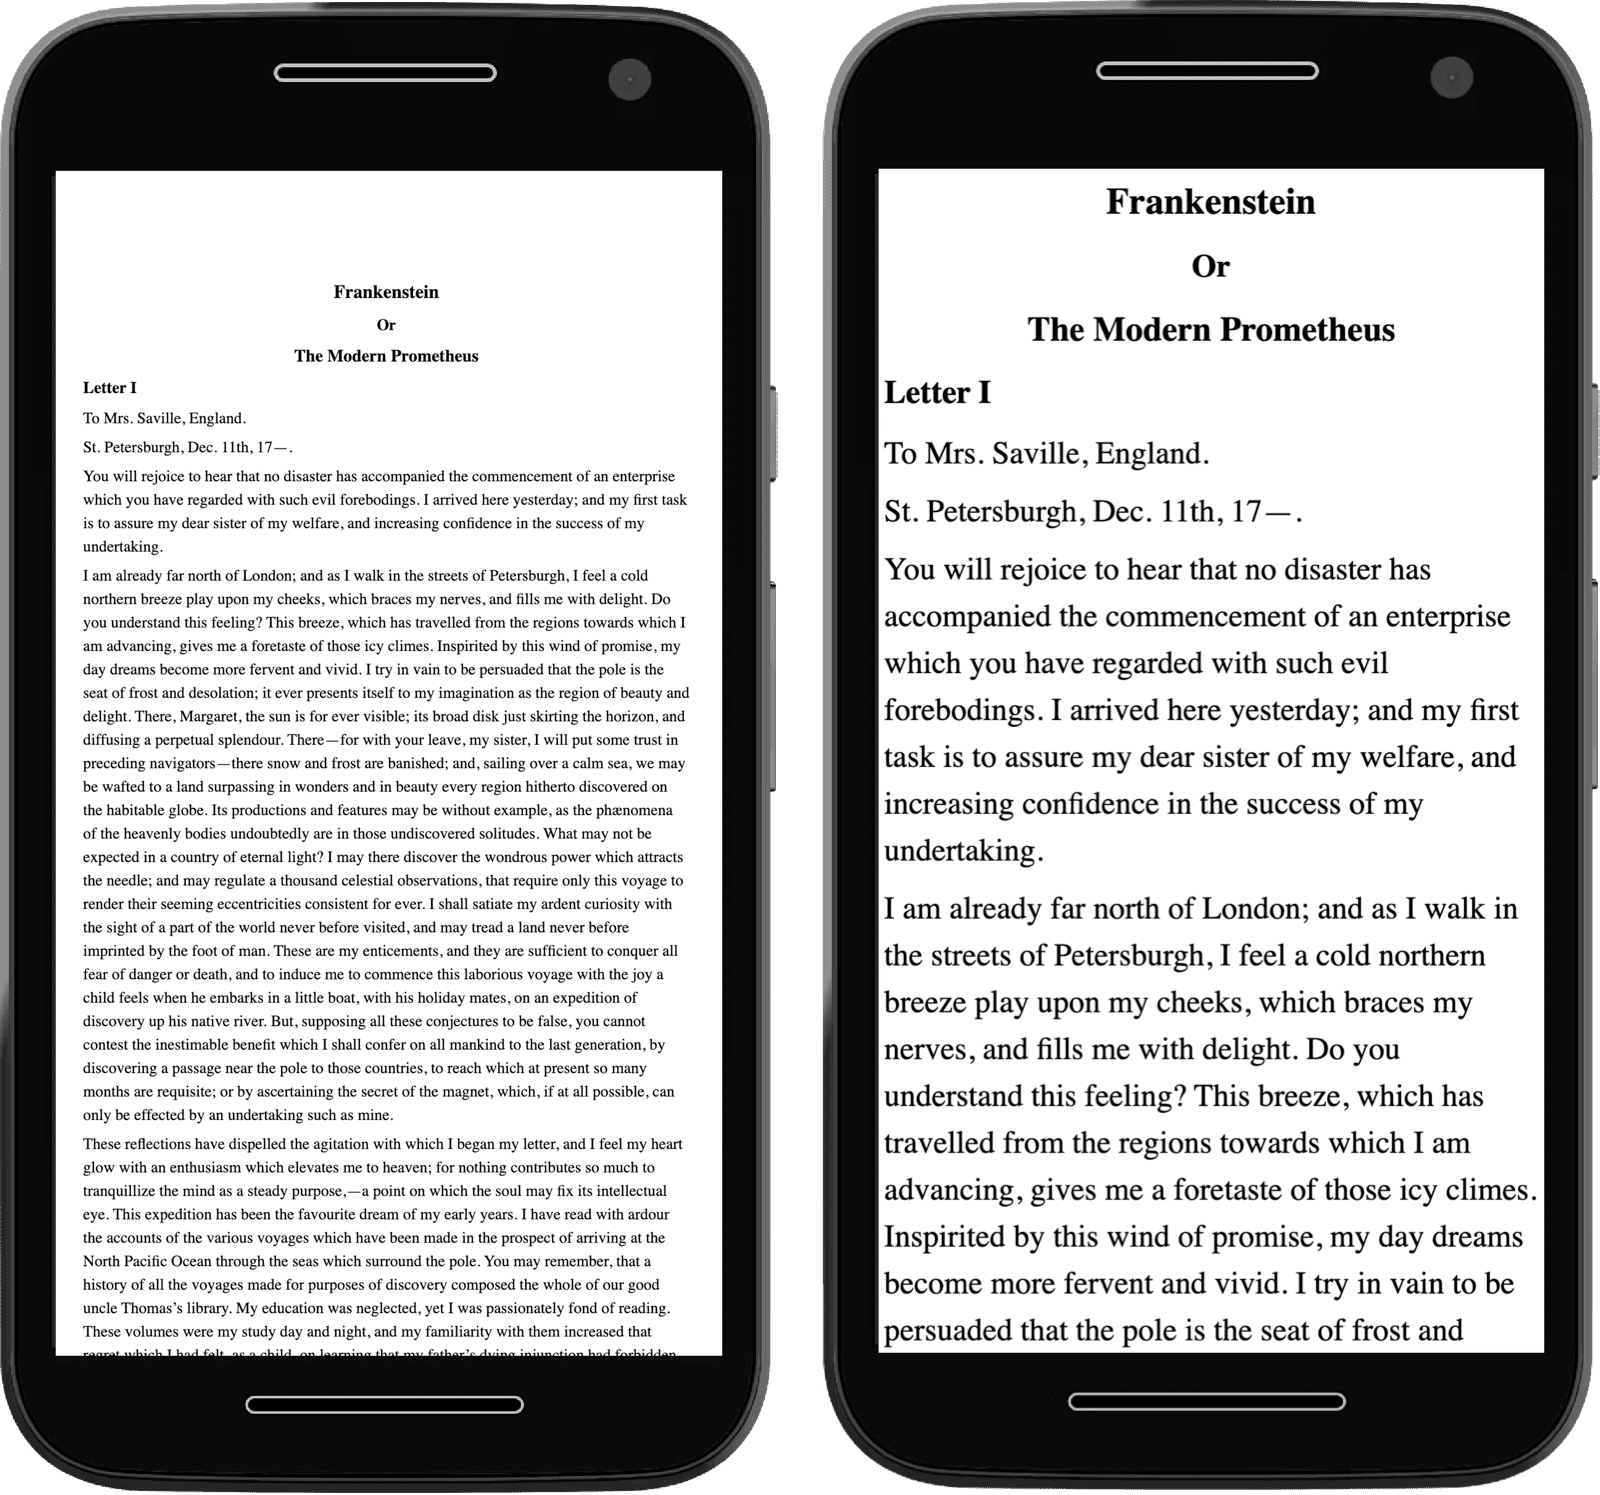 Изображения двух мобильных телефонов с текстом, одно из которых уменьшено из-за отсутствия метатега.